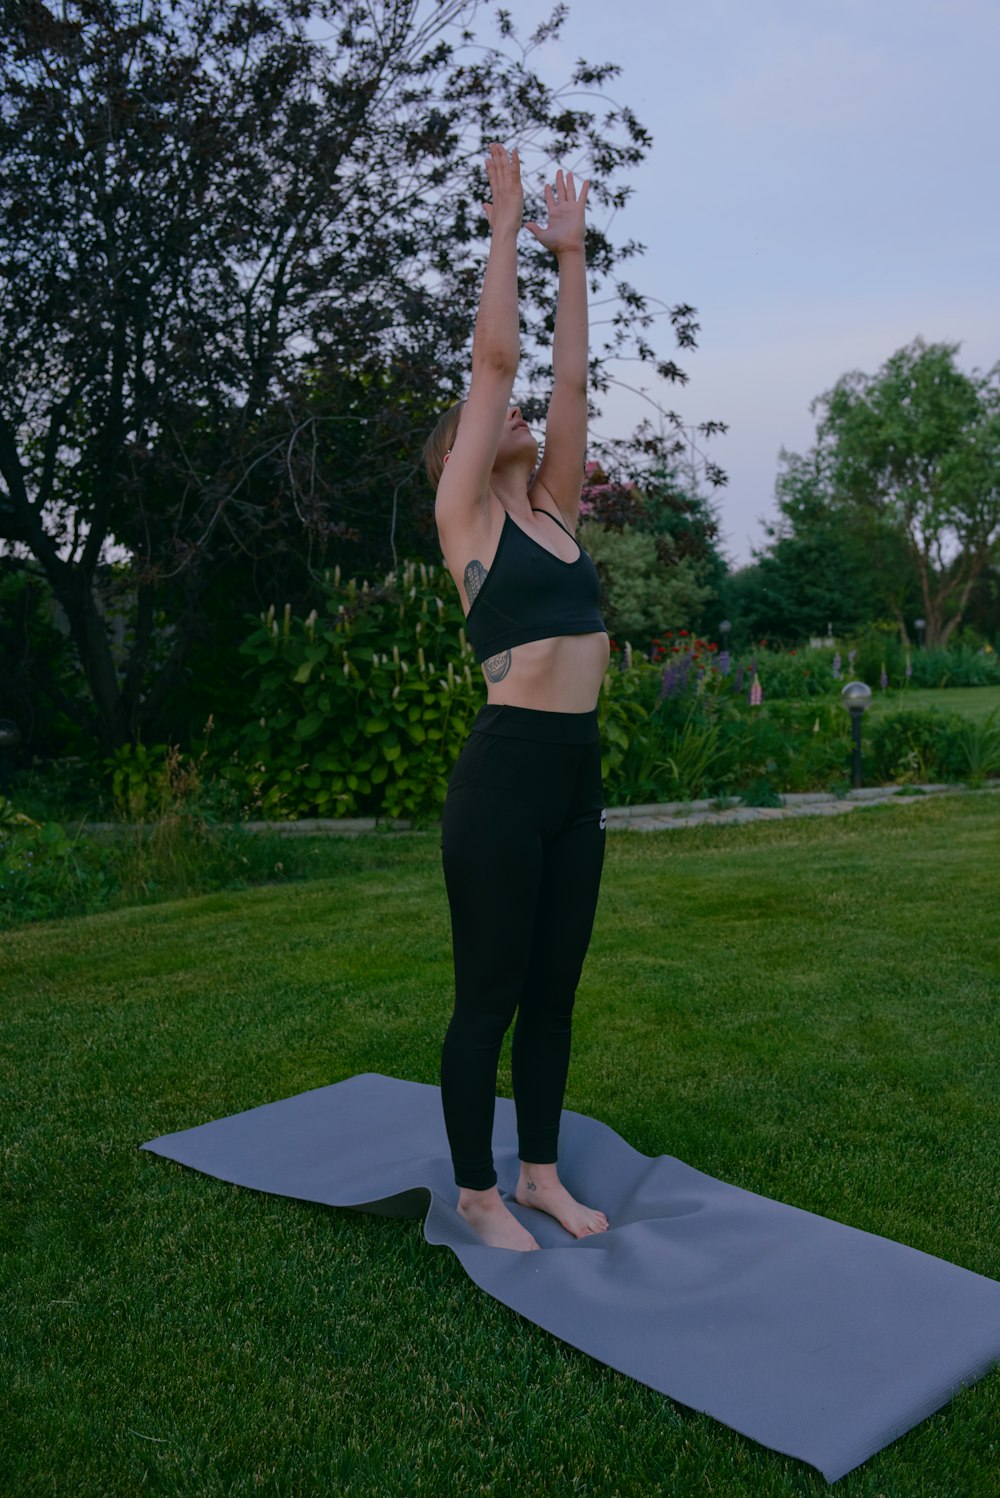 Eine Frau macht eine Yoga-Pose auf einer Yogamatte